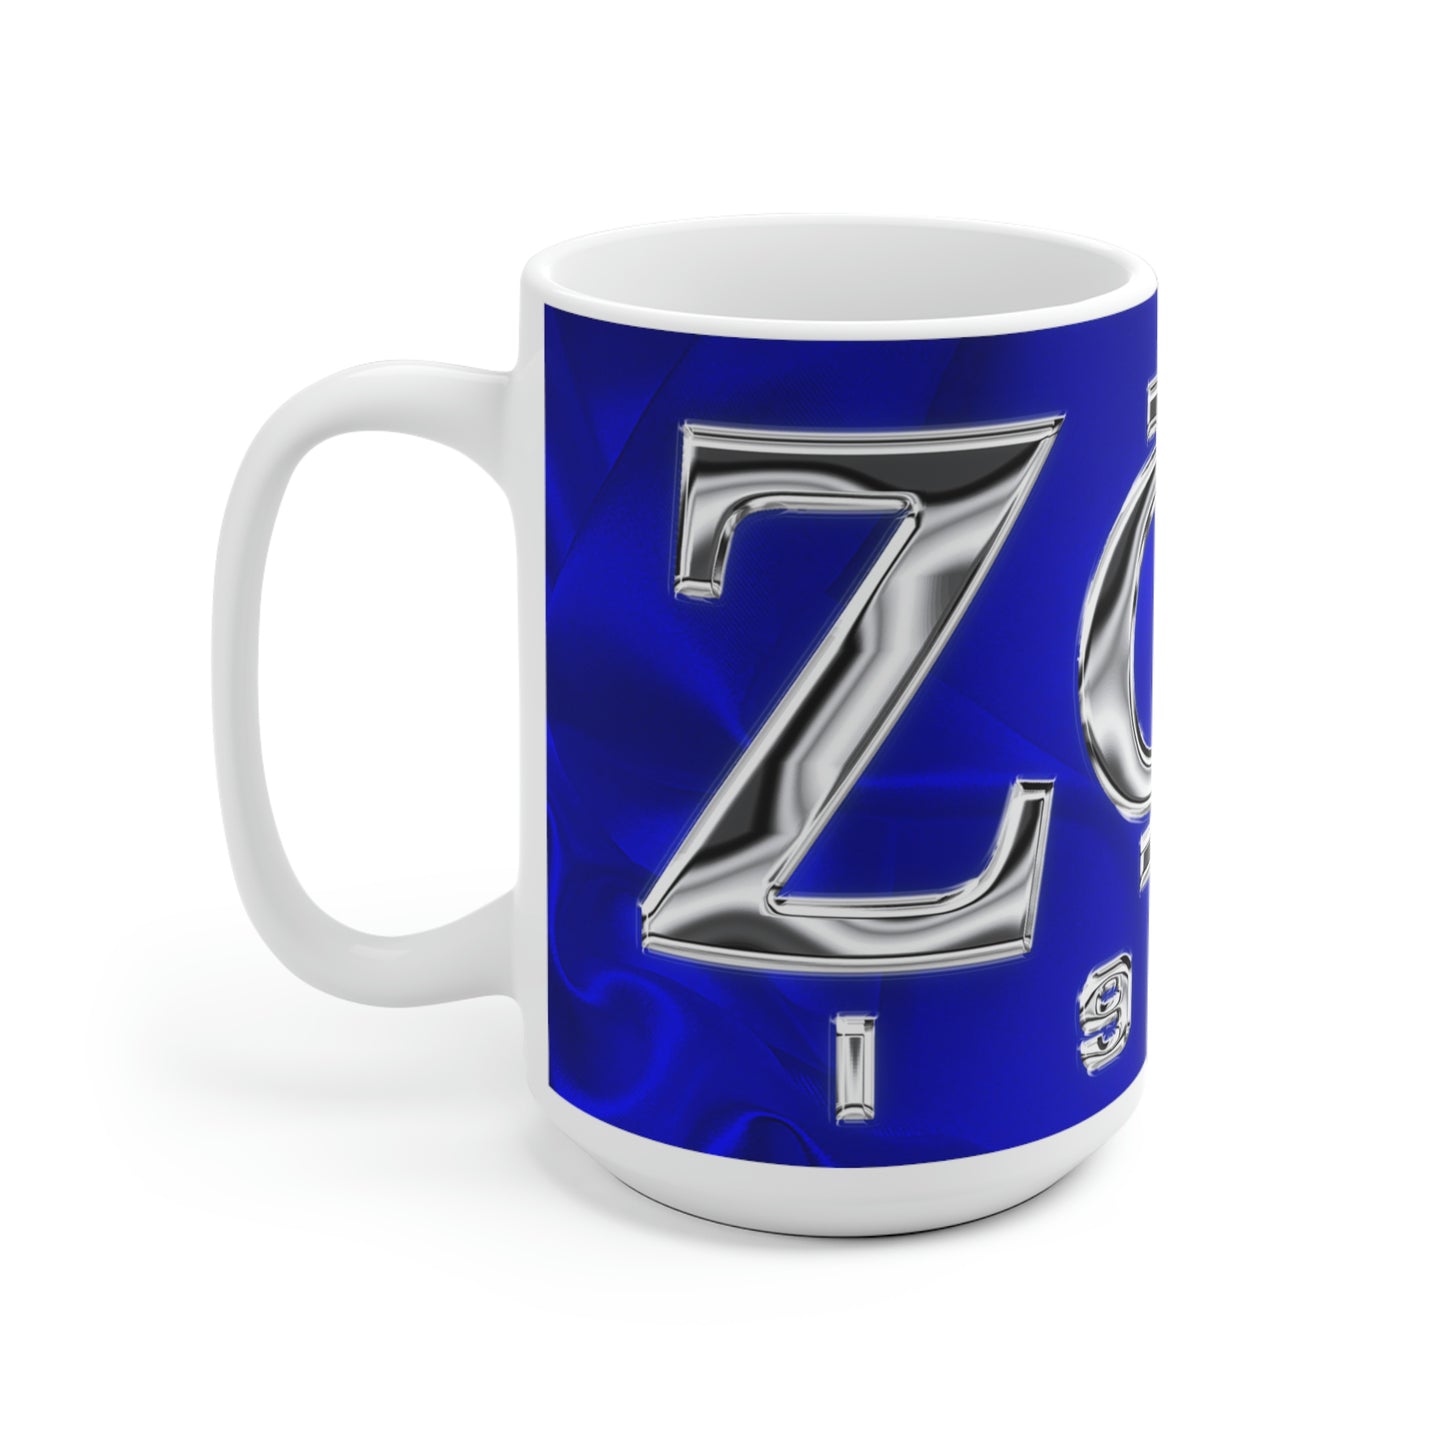 Zeta Ceramic Mug (Royal Blue)